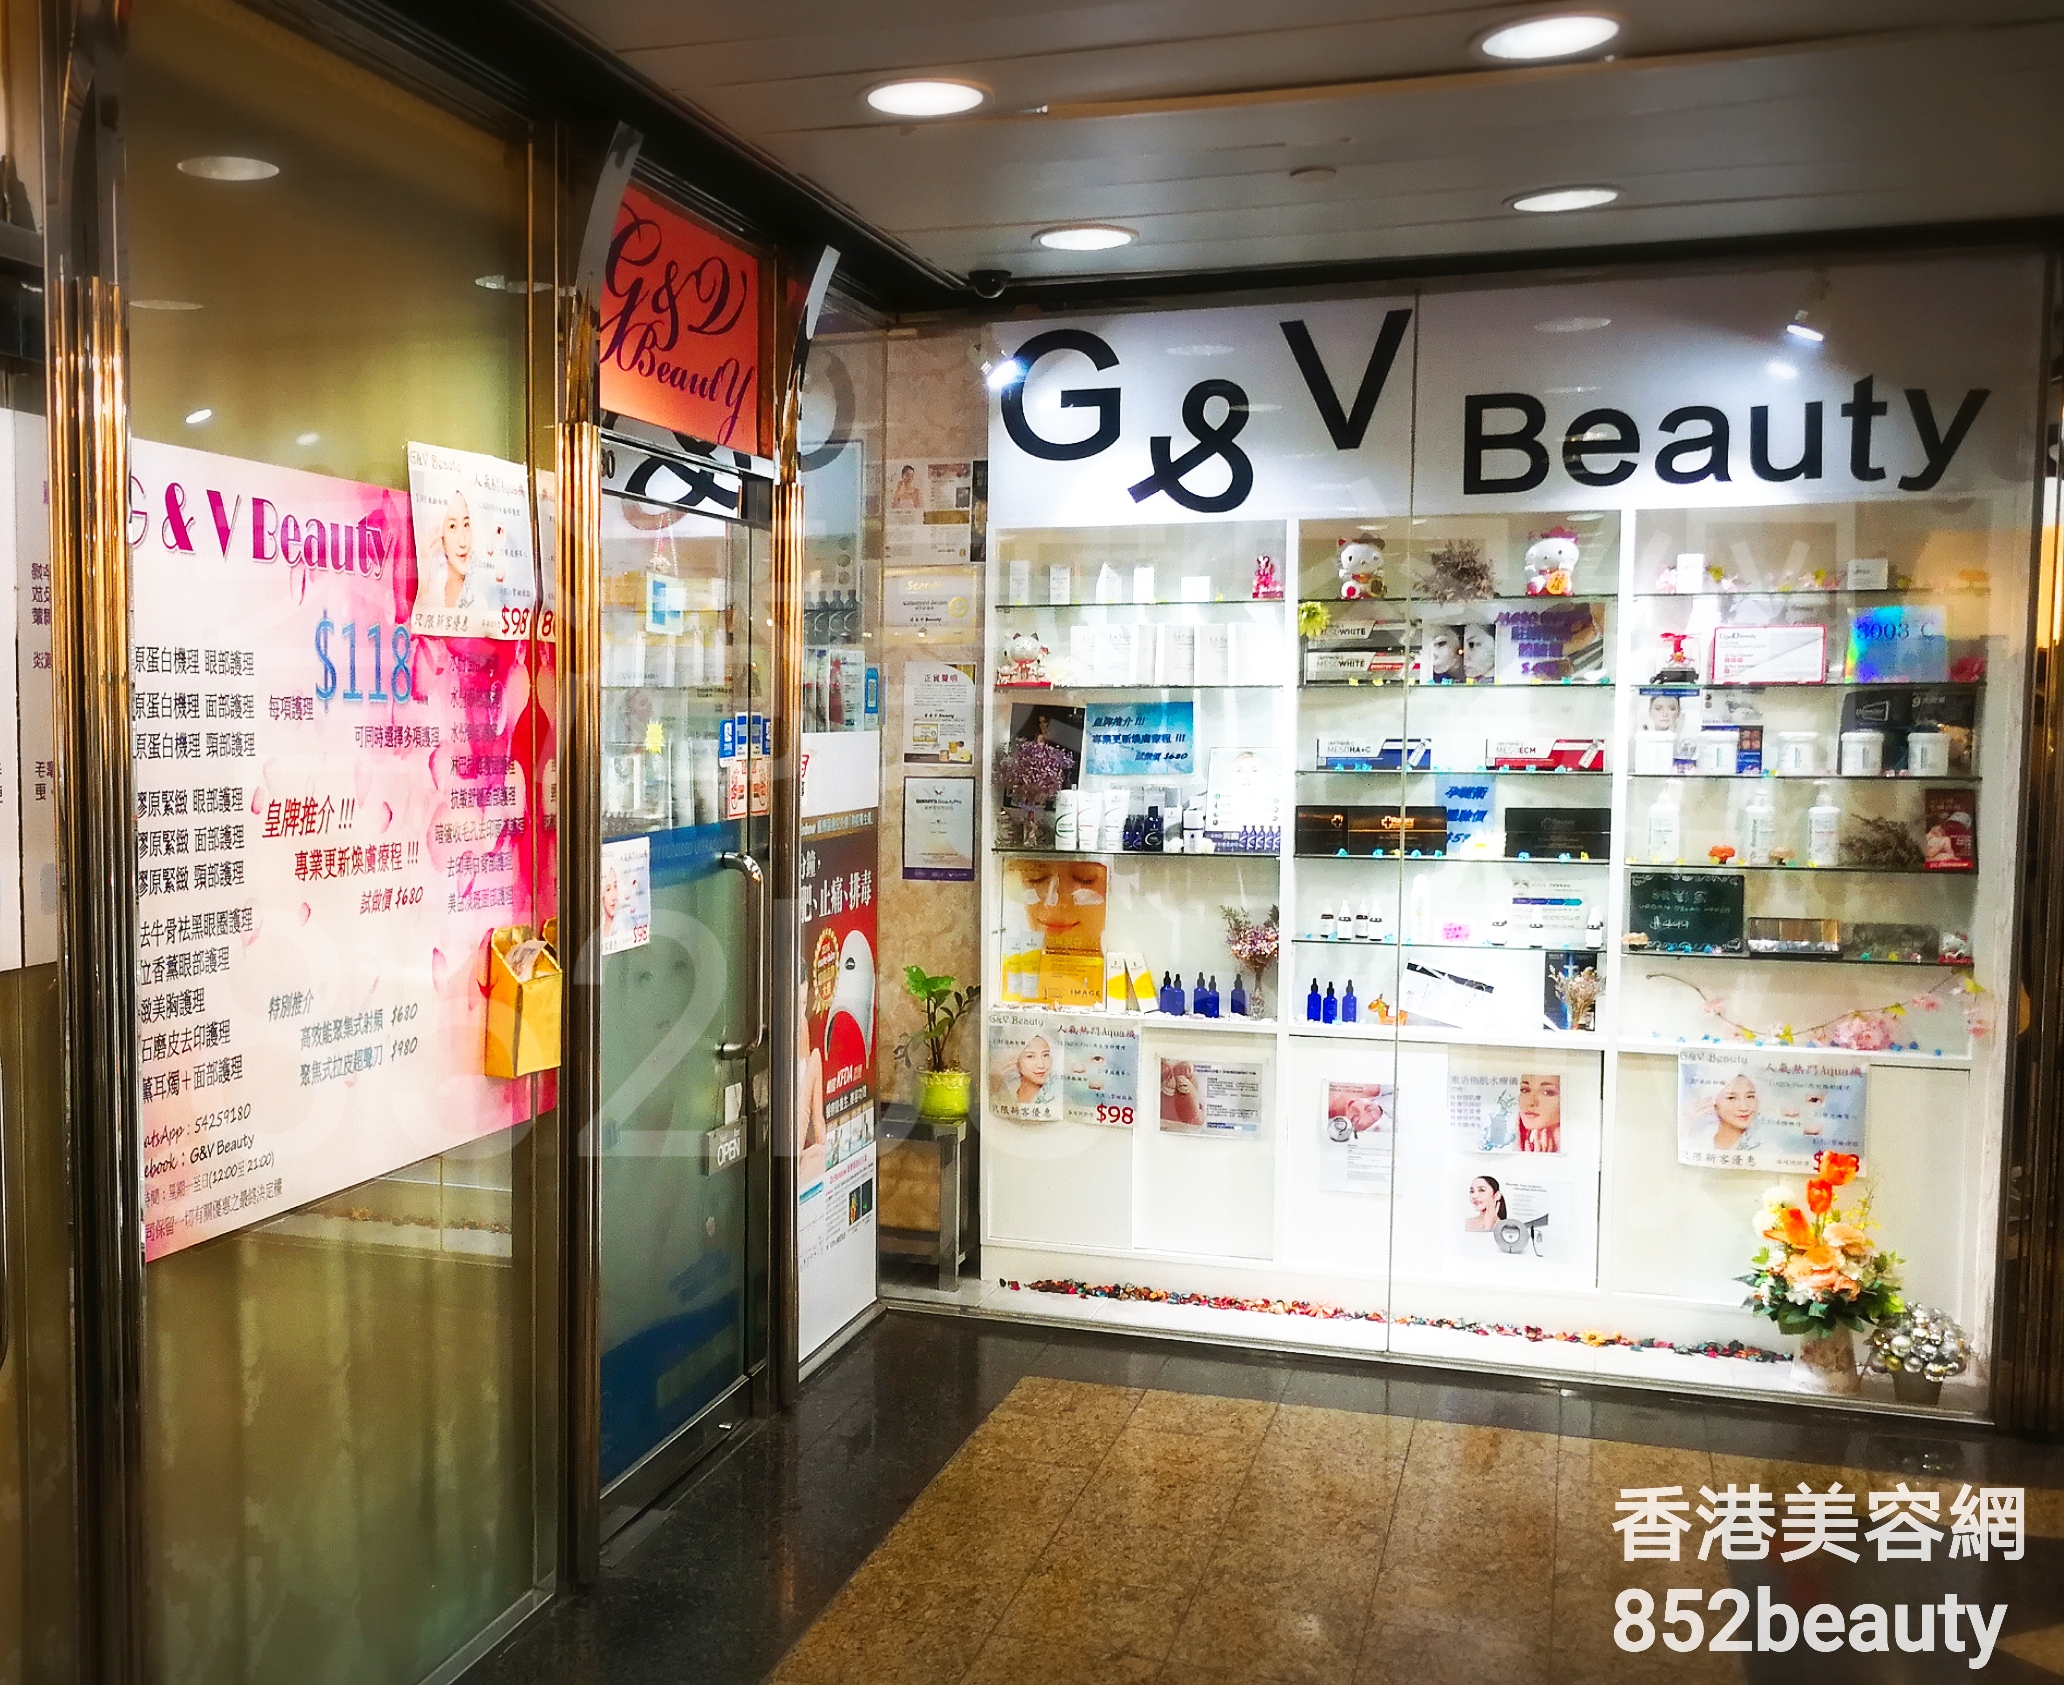 眼部護理: G&V Beauty